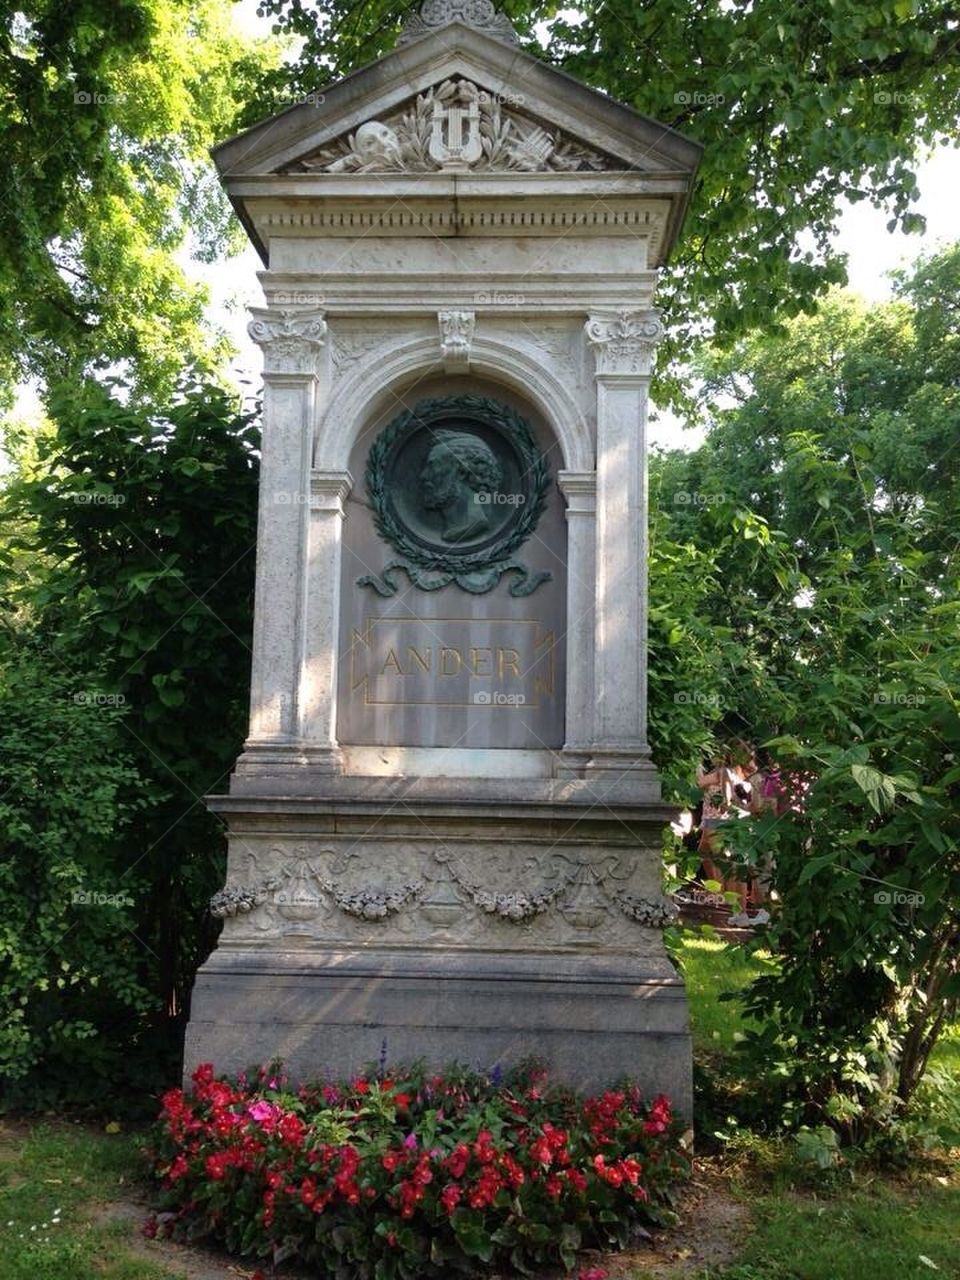 Viennese Memorial in the Zentralfriedhof